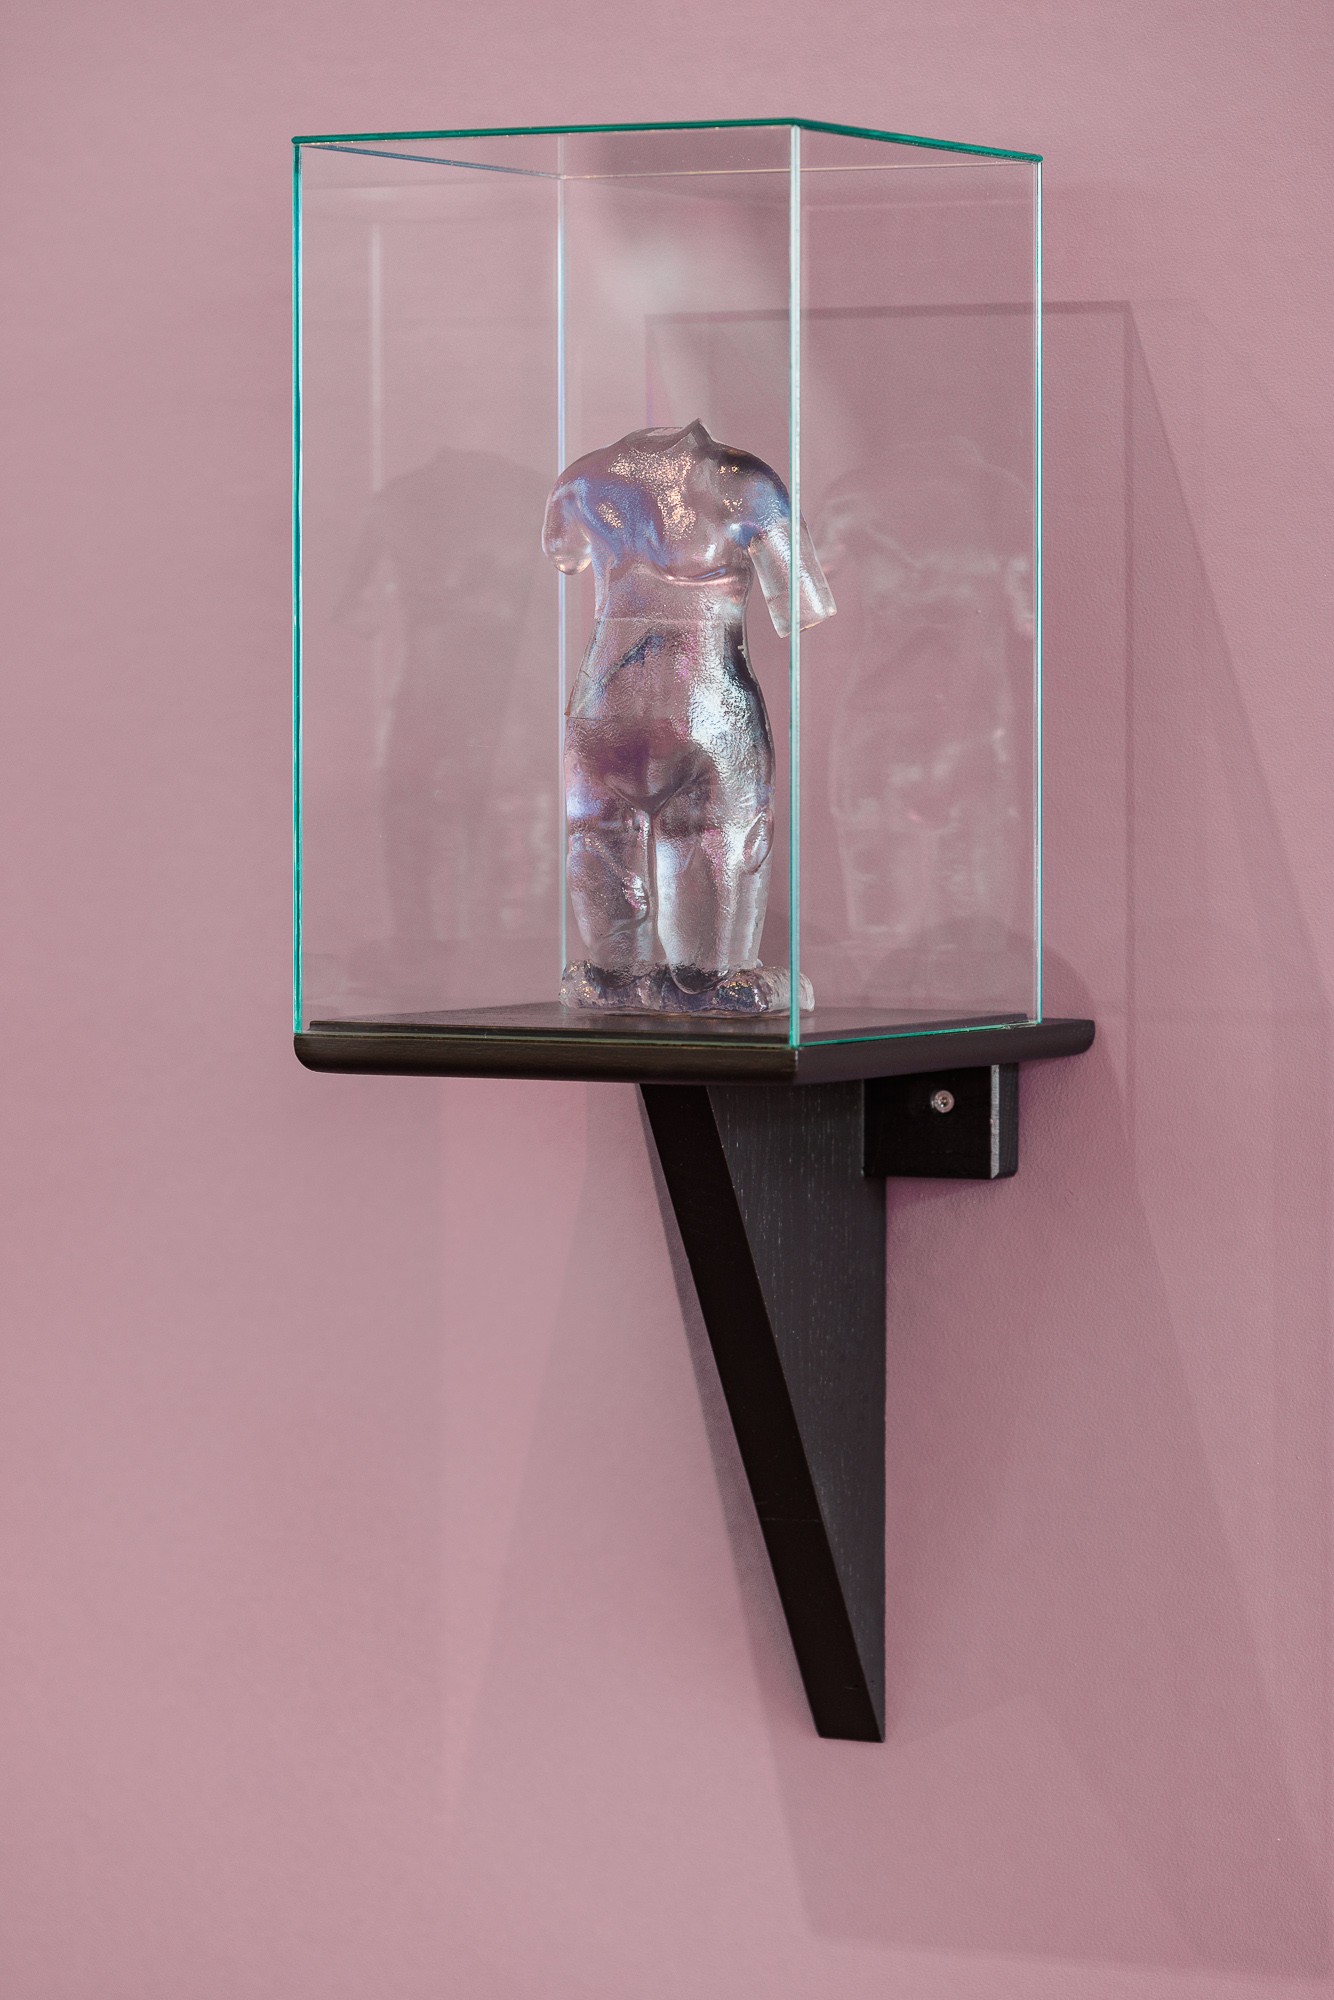 Ausstellungshalle, eine zart rosa Wand, auf ihr eine Vitrine mit einer durchsichtigen Figur ohne Kopf mit Daten-Chip